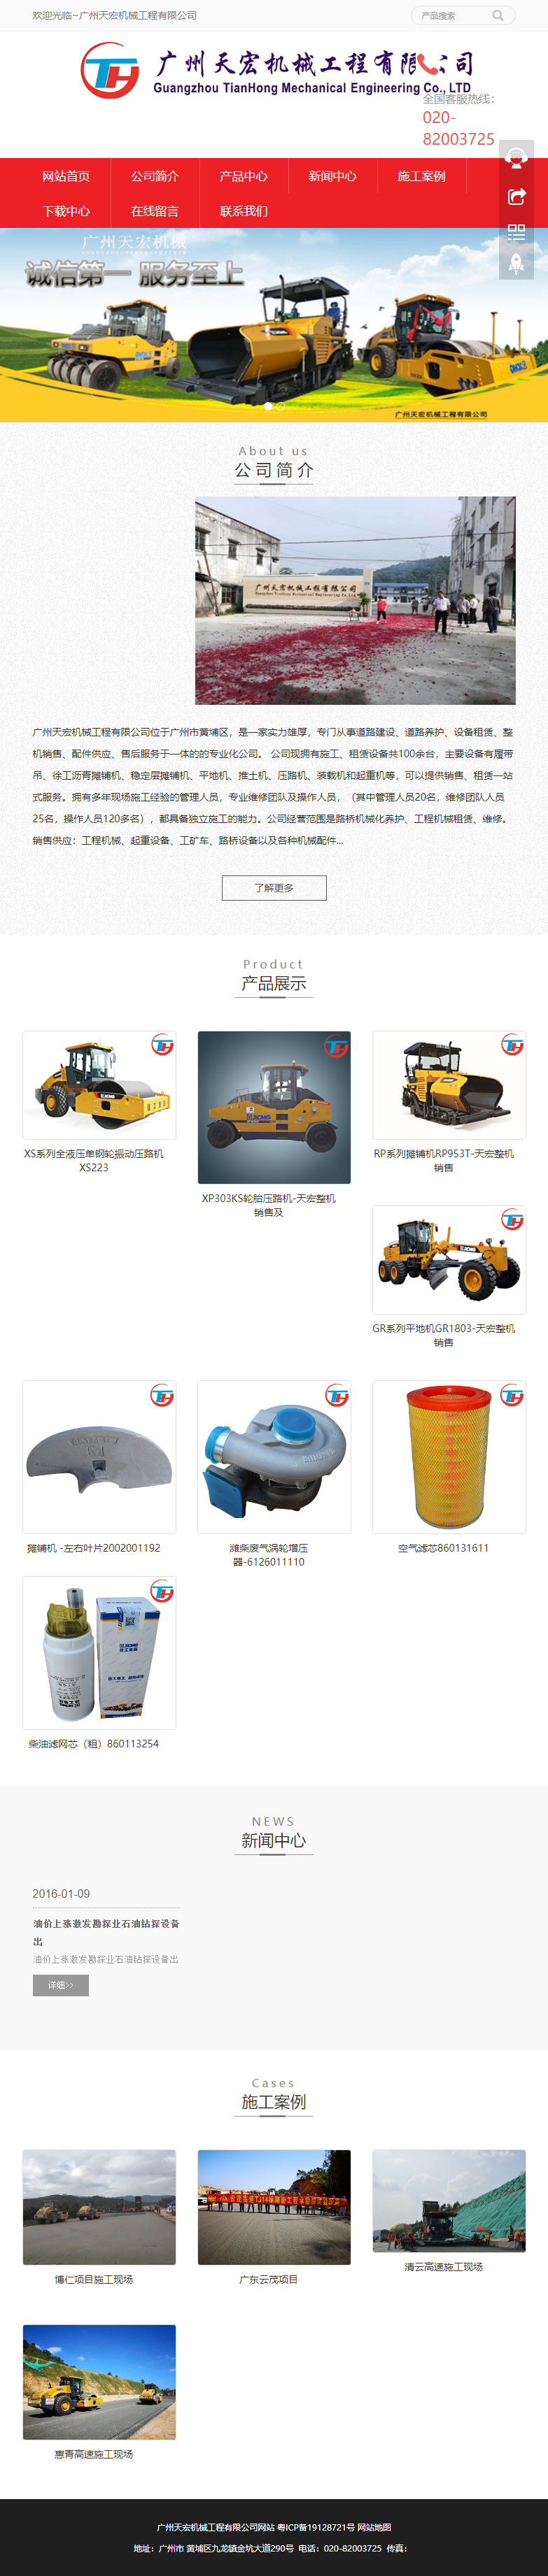 广州天宏机械工程有限公司网站案例